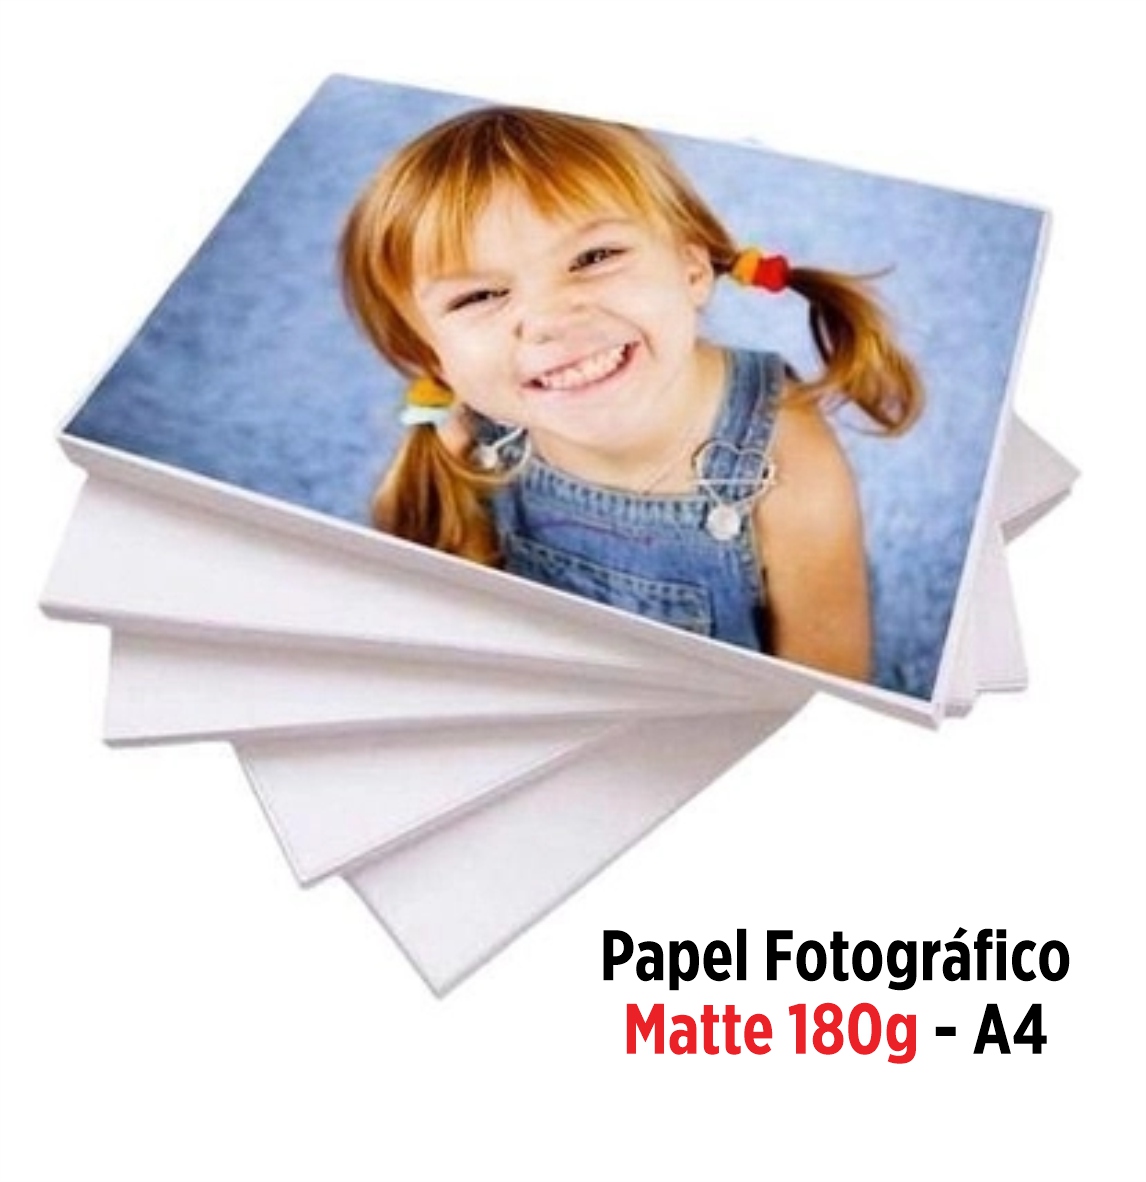 Papel Fotográfico Matte 180g - A4 20 folhas